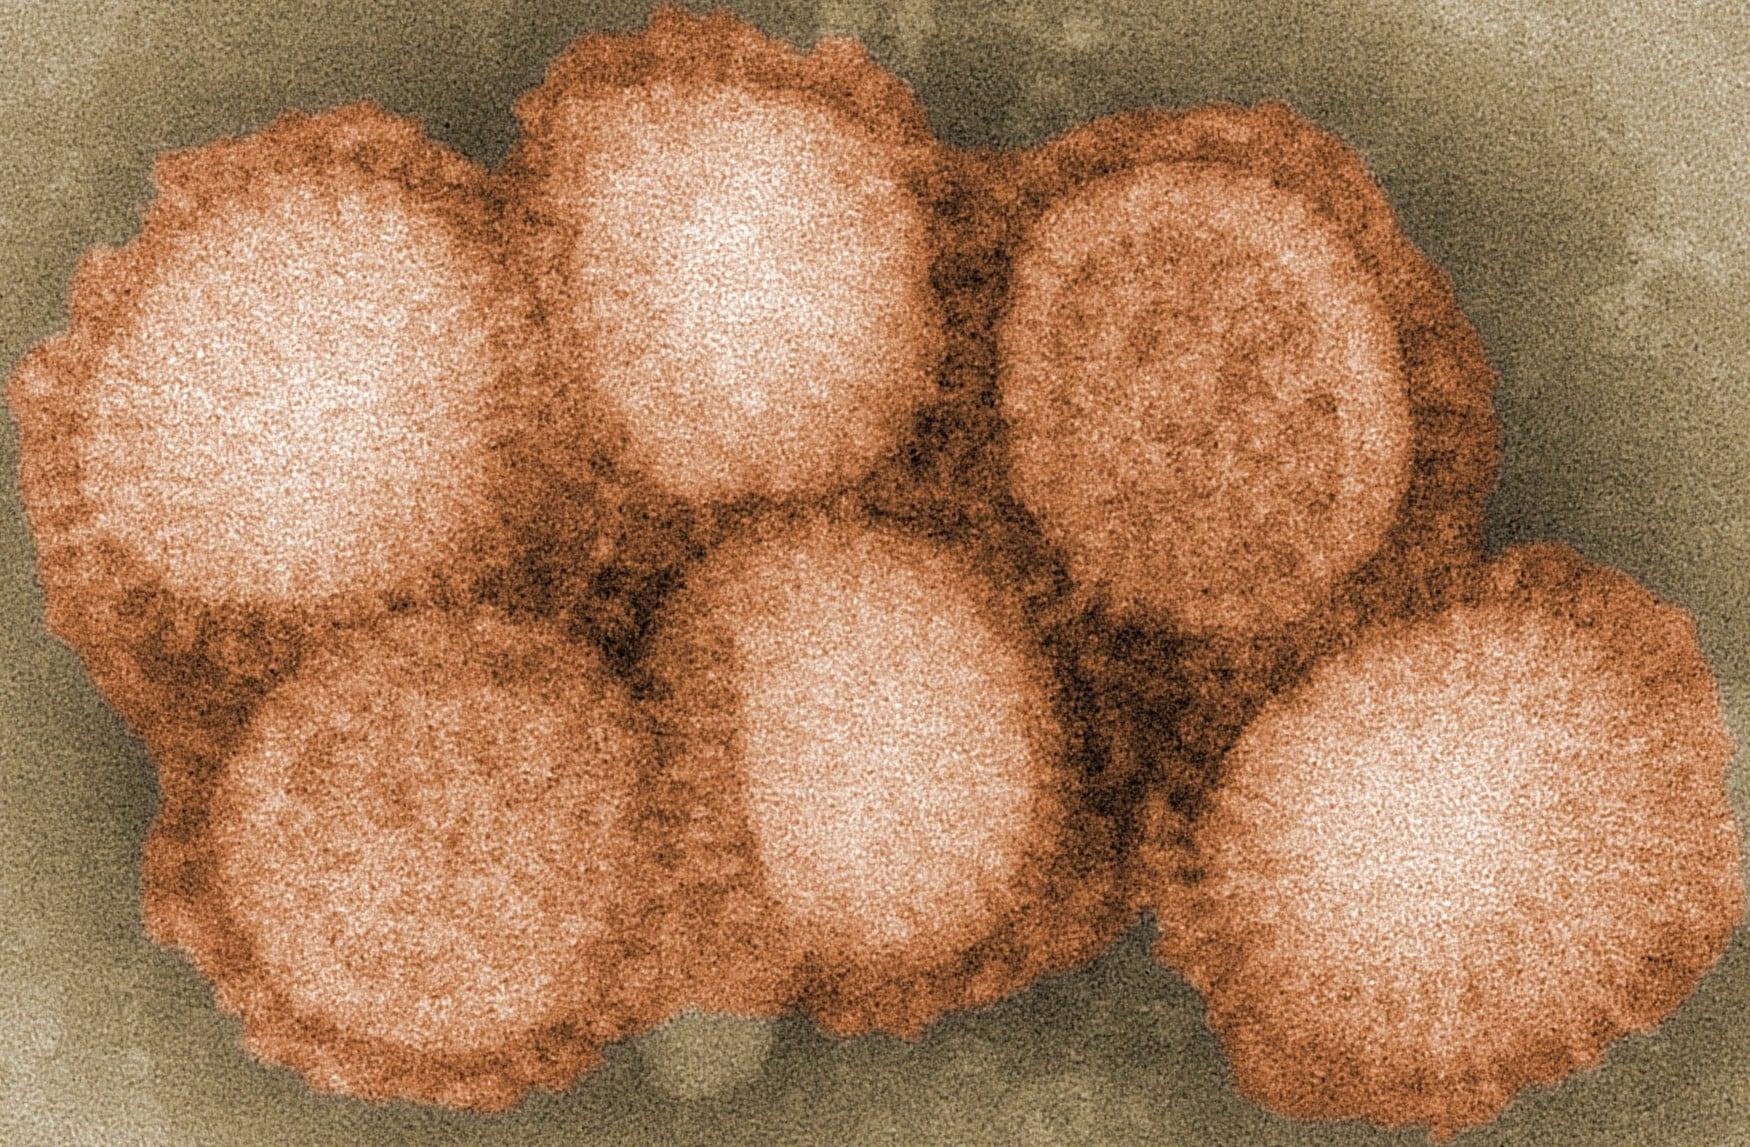 Учёные изучили историю вируса гриппа и составили древо отношений